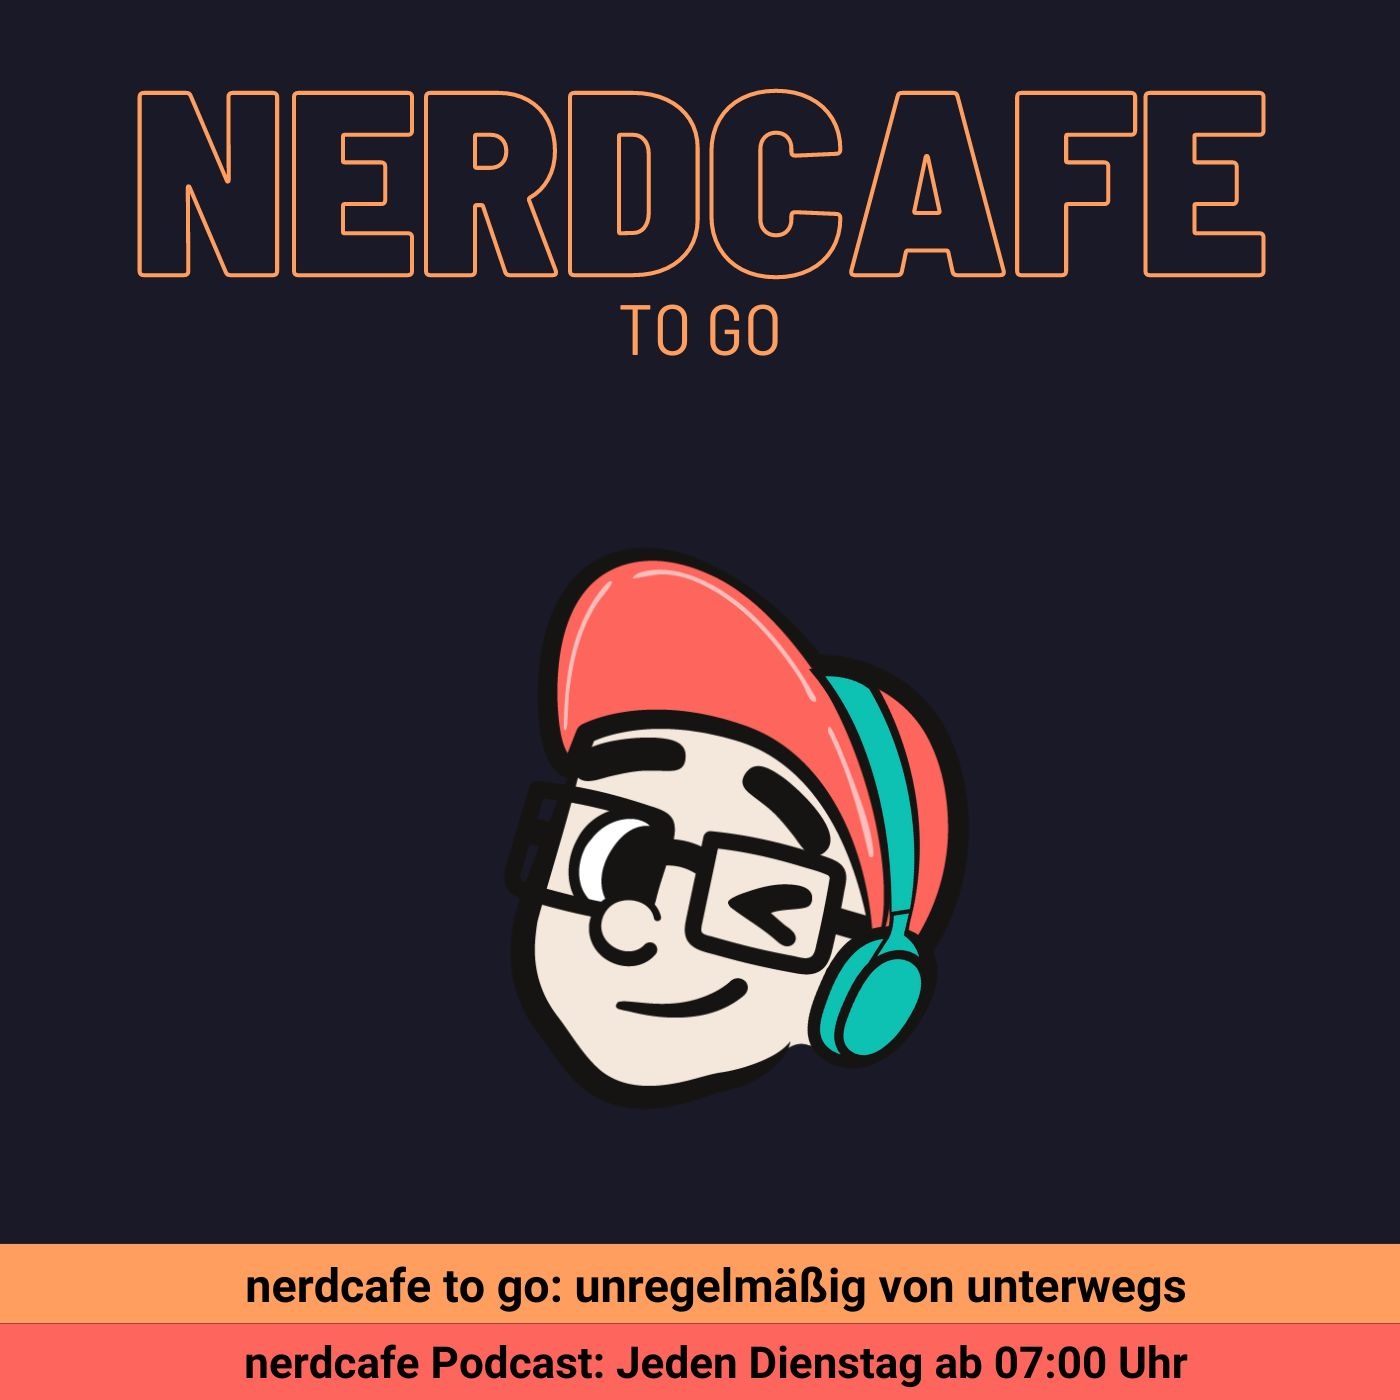 nerdcafe to go mit sit'n'skate am Spielbudenplatz im Hamburg 